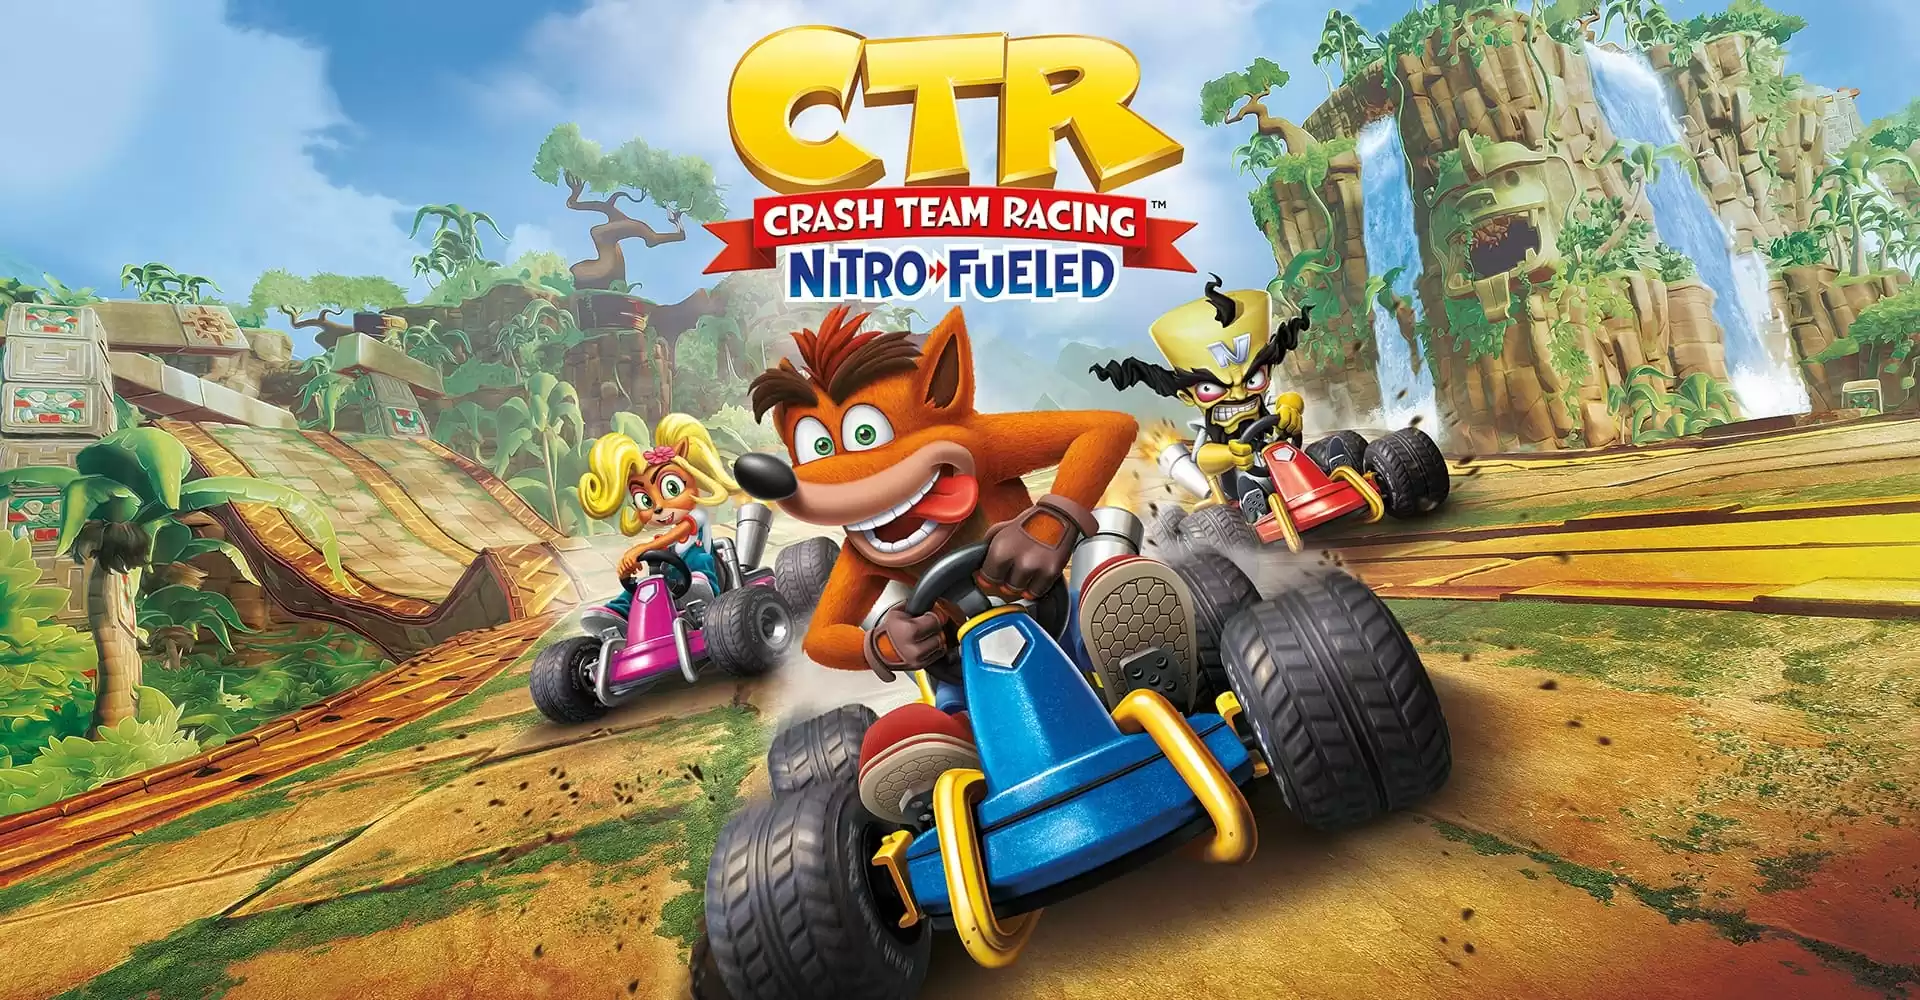 Crash Team Racing Nitro Fueled Recensione: (ri)accendiamo i motori!